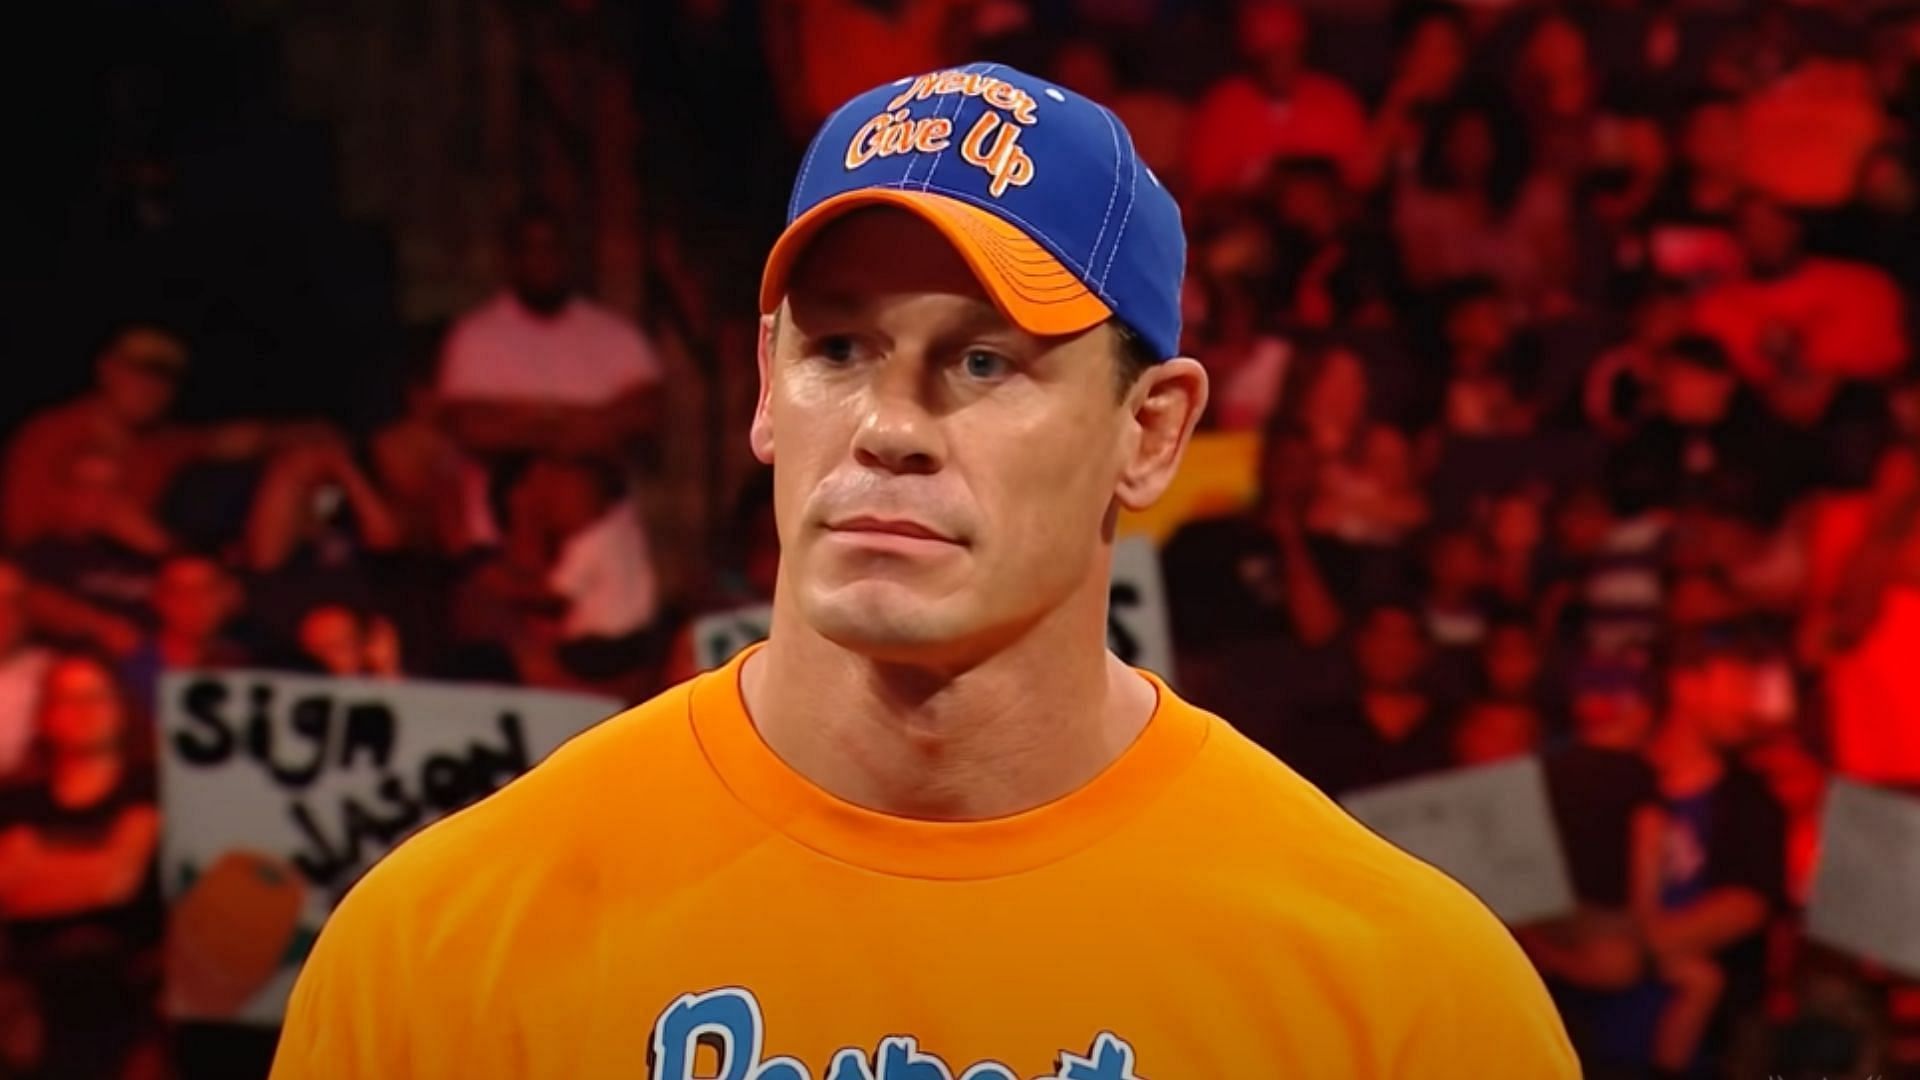 John Cena will face Austin Theory at WrestleMania 39.